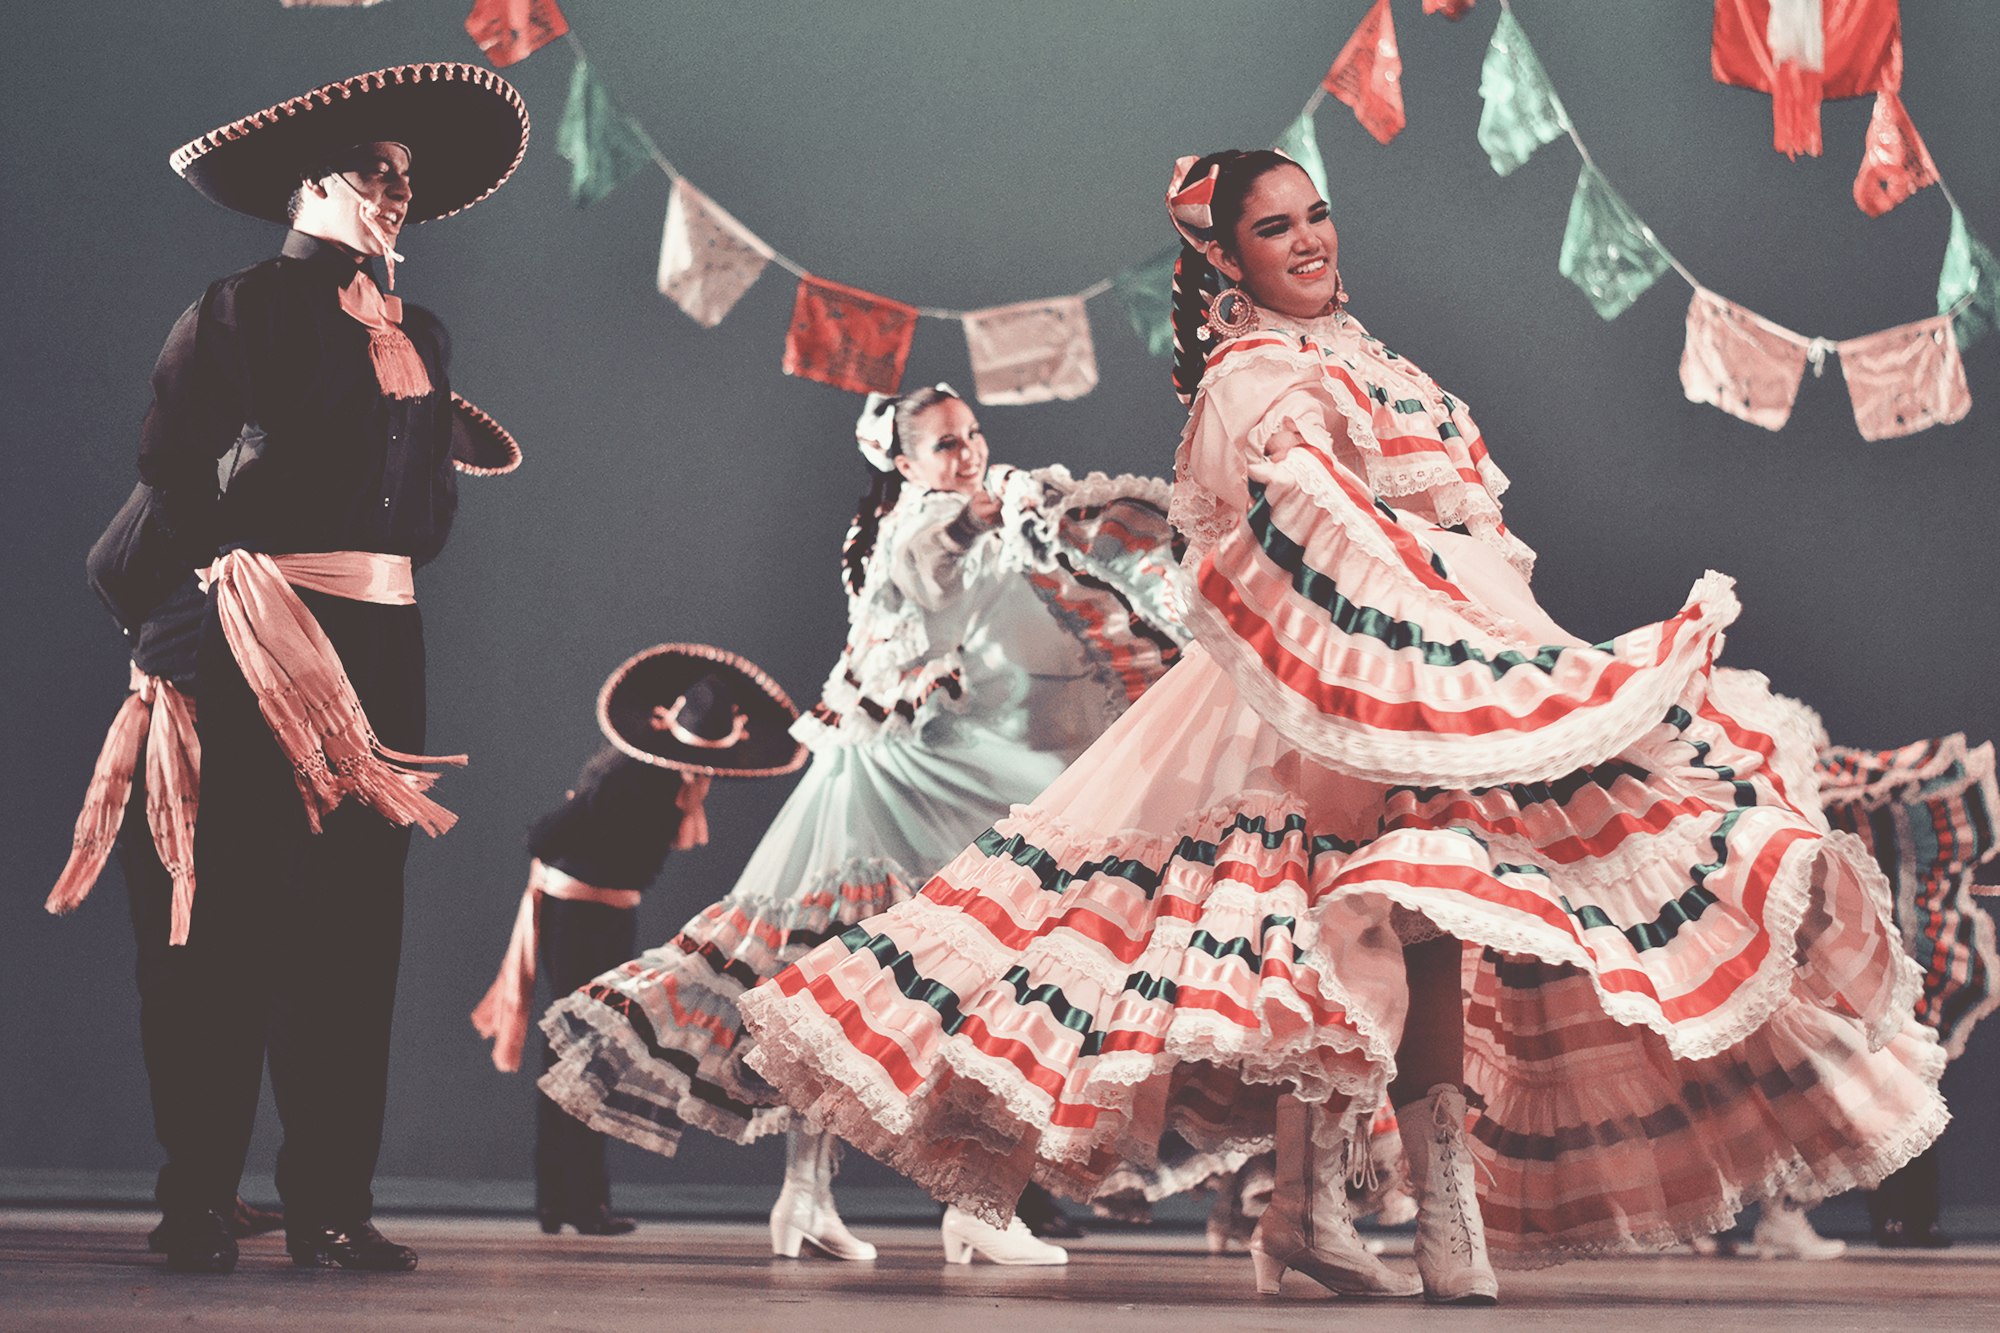 Cultural festivities in Guadalajara